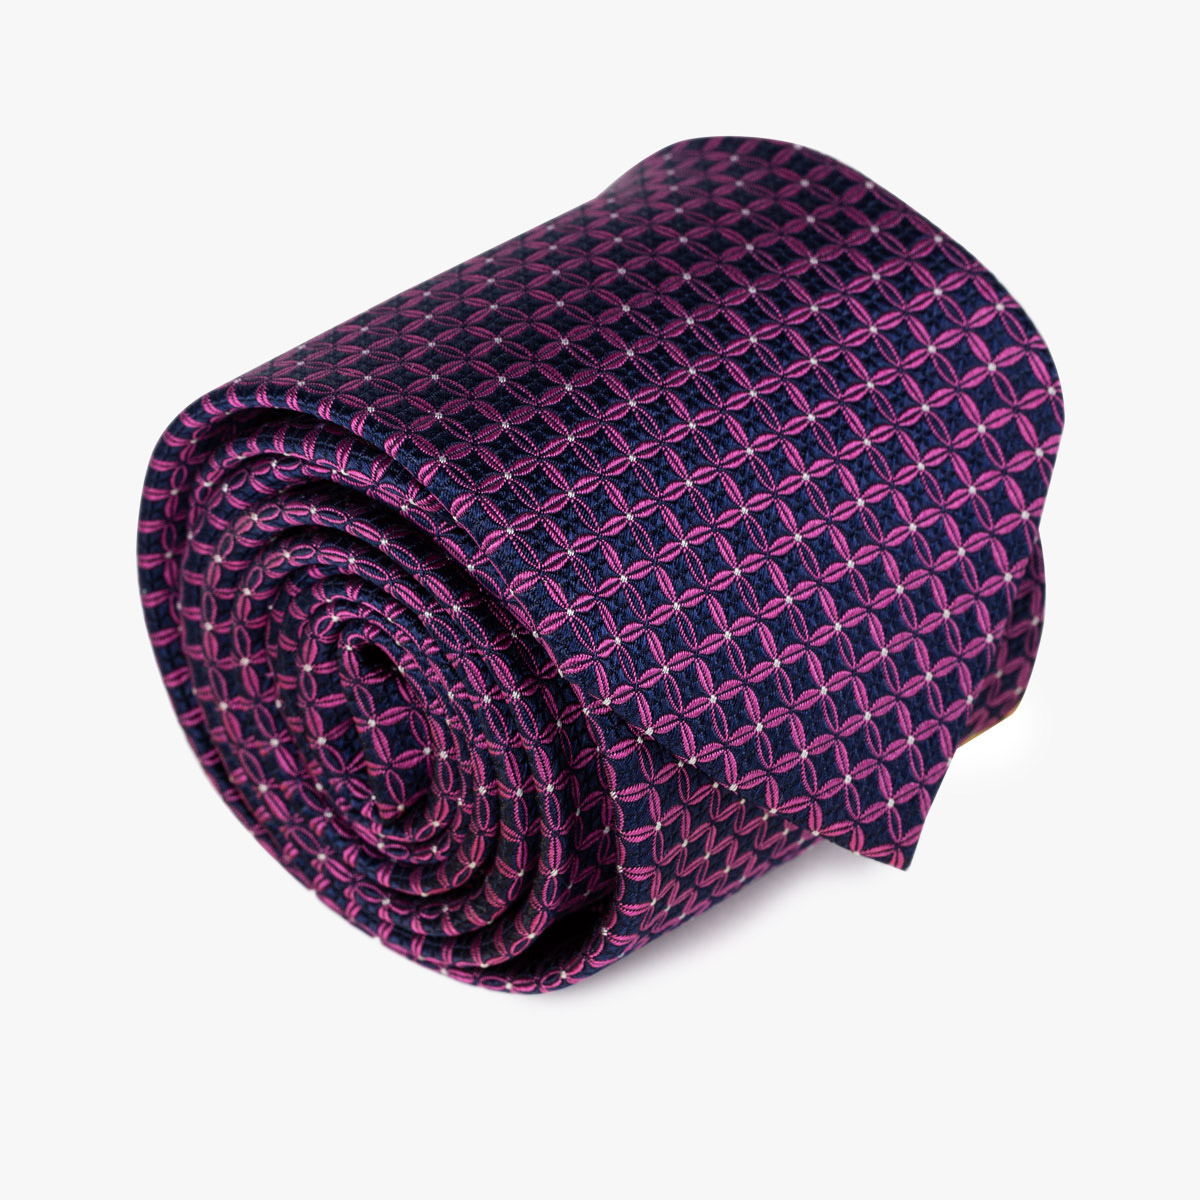 Aufgerollte Krawatte mit floralem geometrischem Muster in magenta/blau